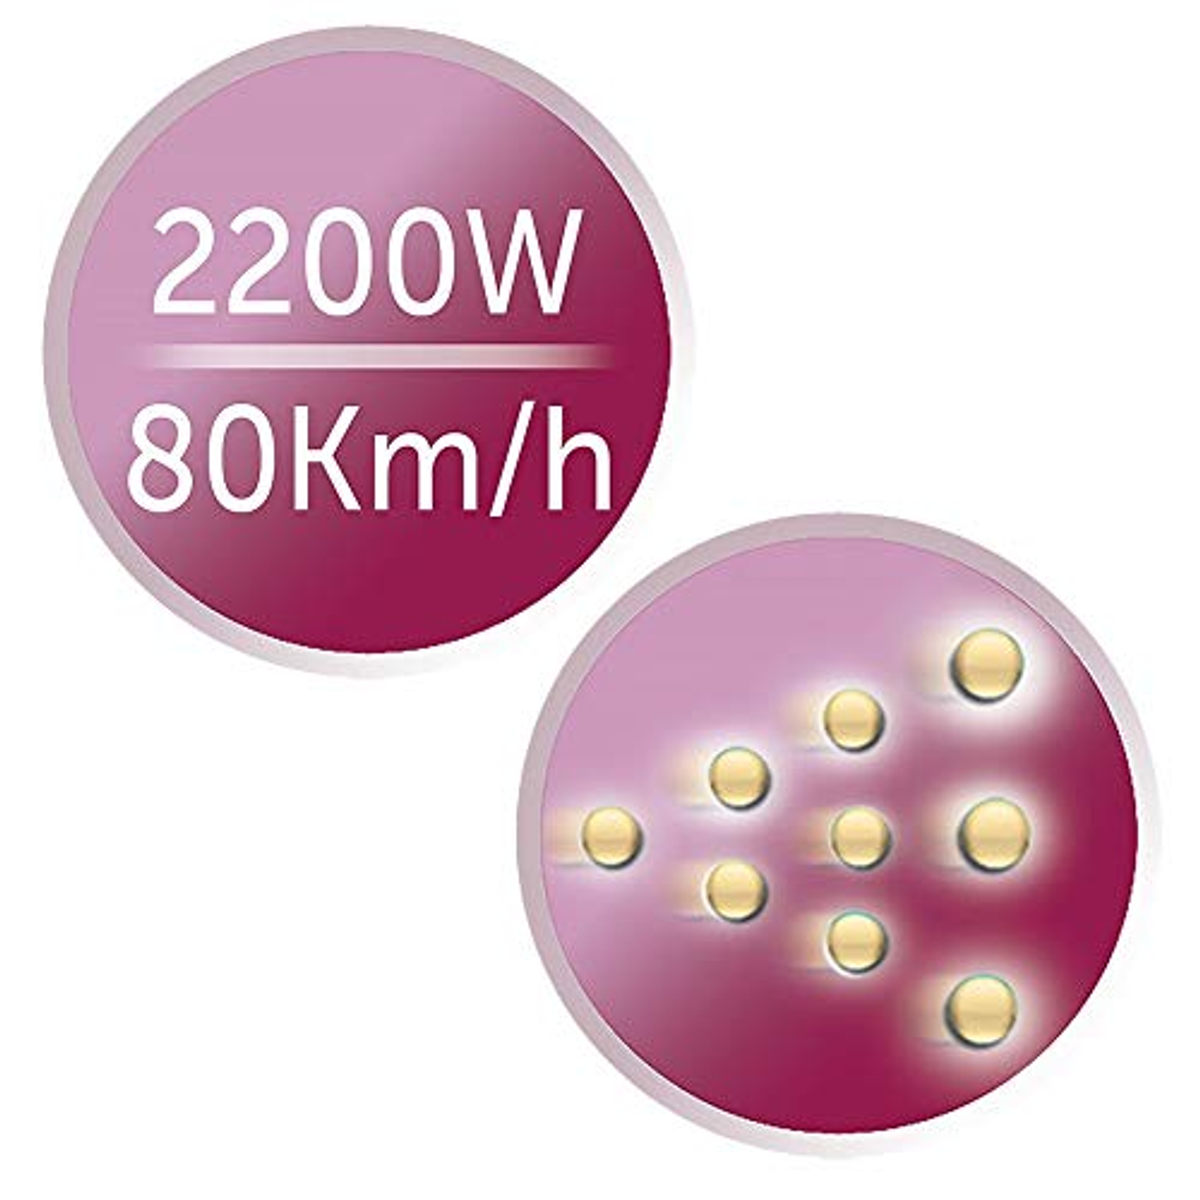 REMINGTON D 5950 PRO AIR Schwarz/Pink Watt) (2200 DRY Haartrockner